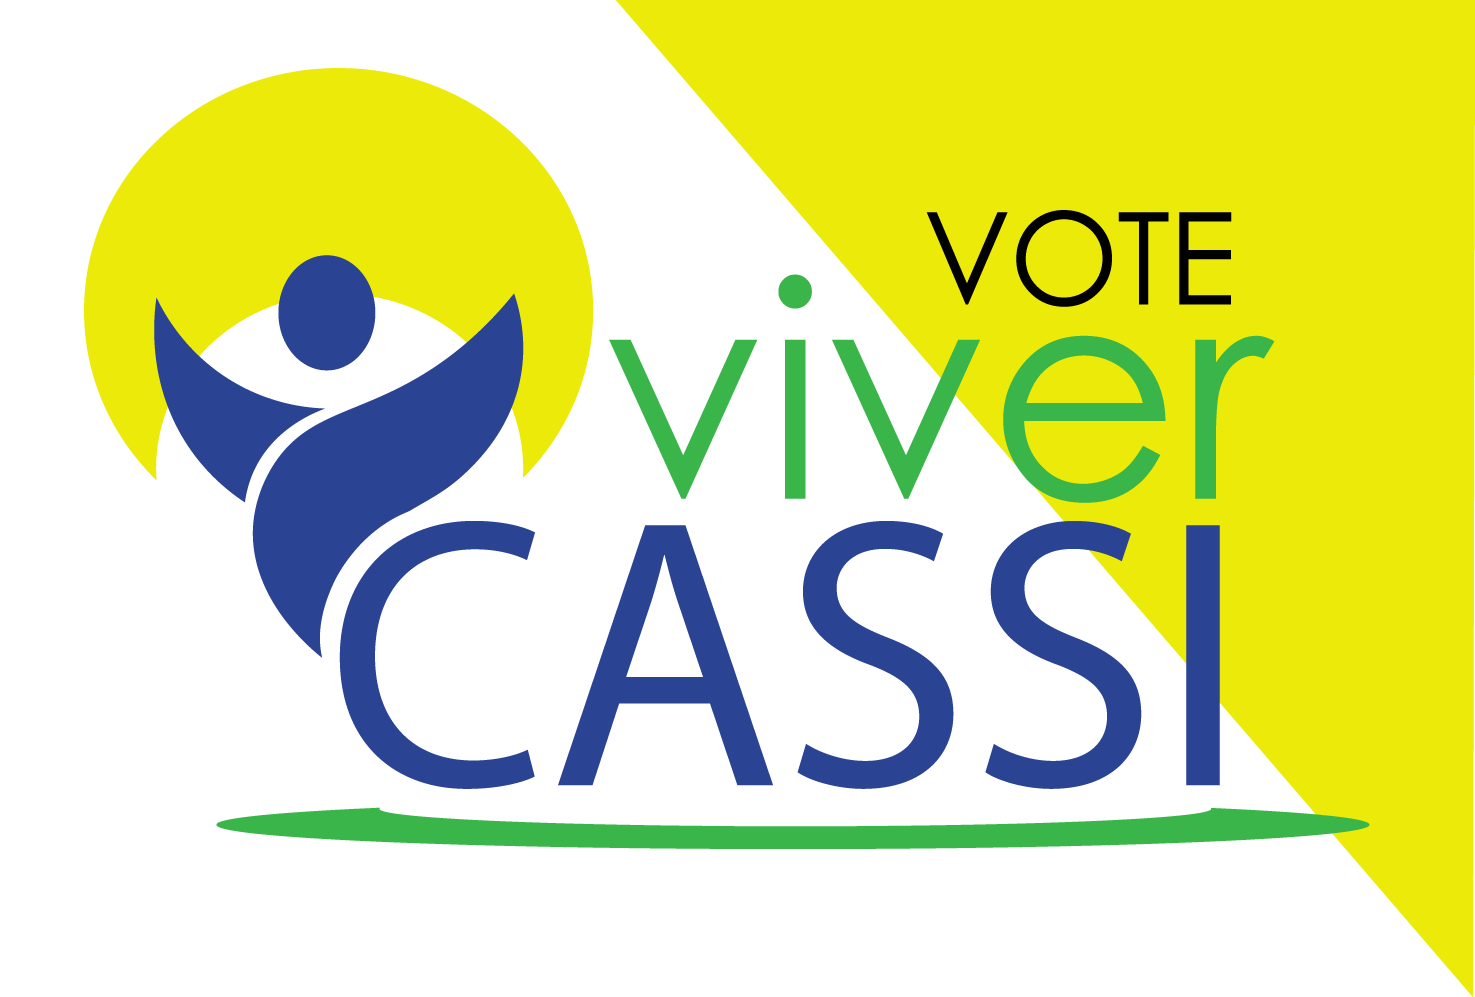 Eleições Cassi: Contraf-CUT apoia Chapas 4 e 33  Viver Cassi